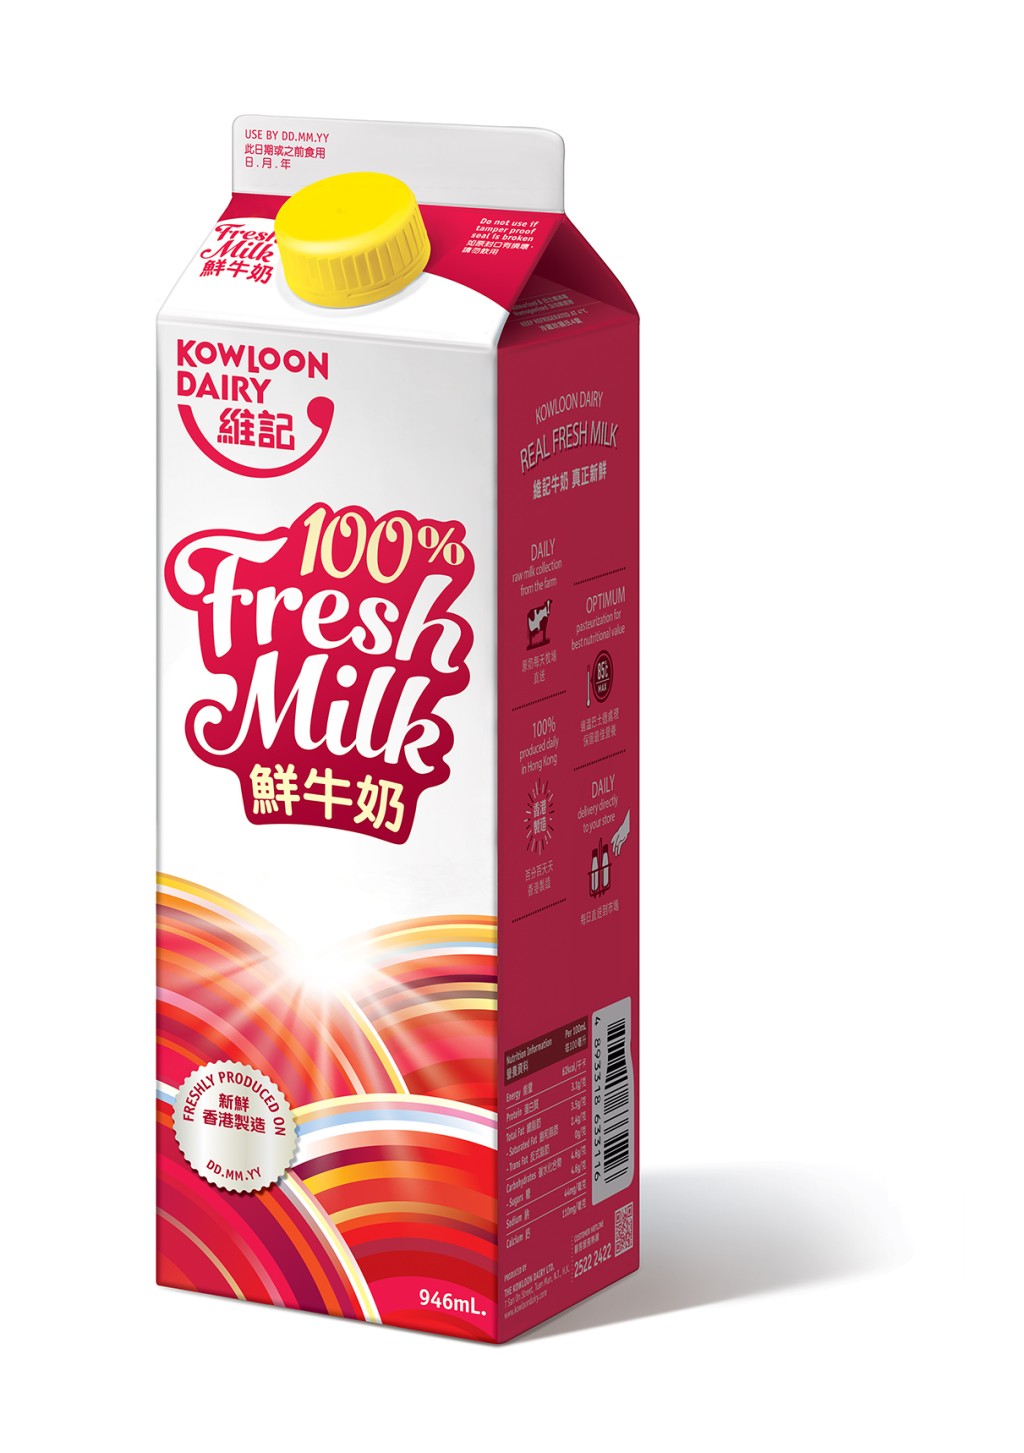 維記鮮牛奶946毫升折實價$40/2件，平均 $20/件（原價$50/2件）